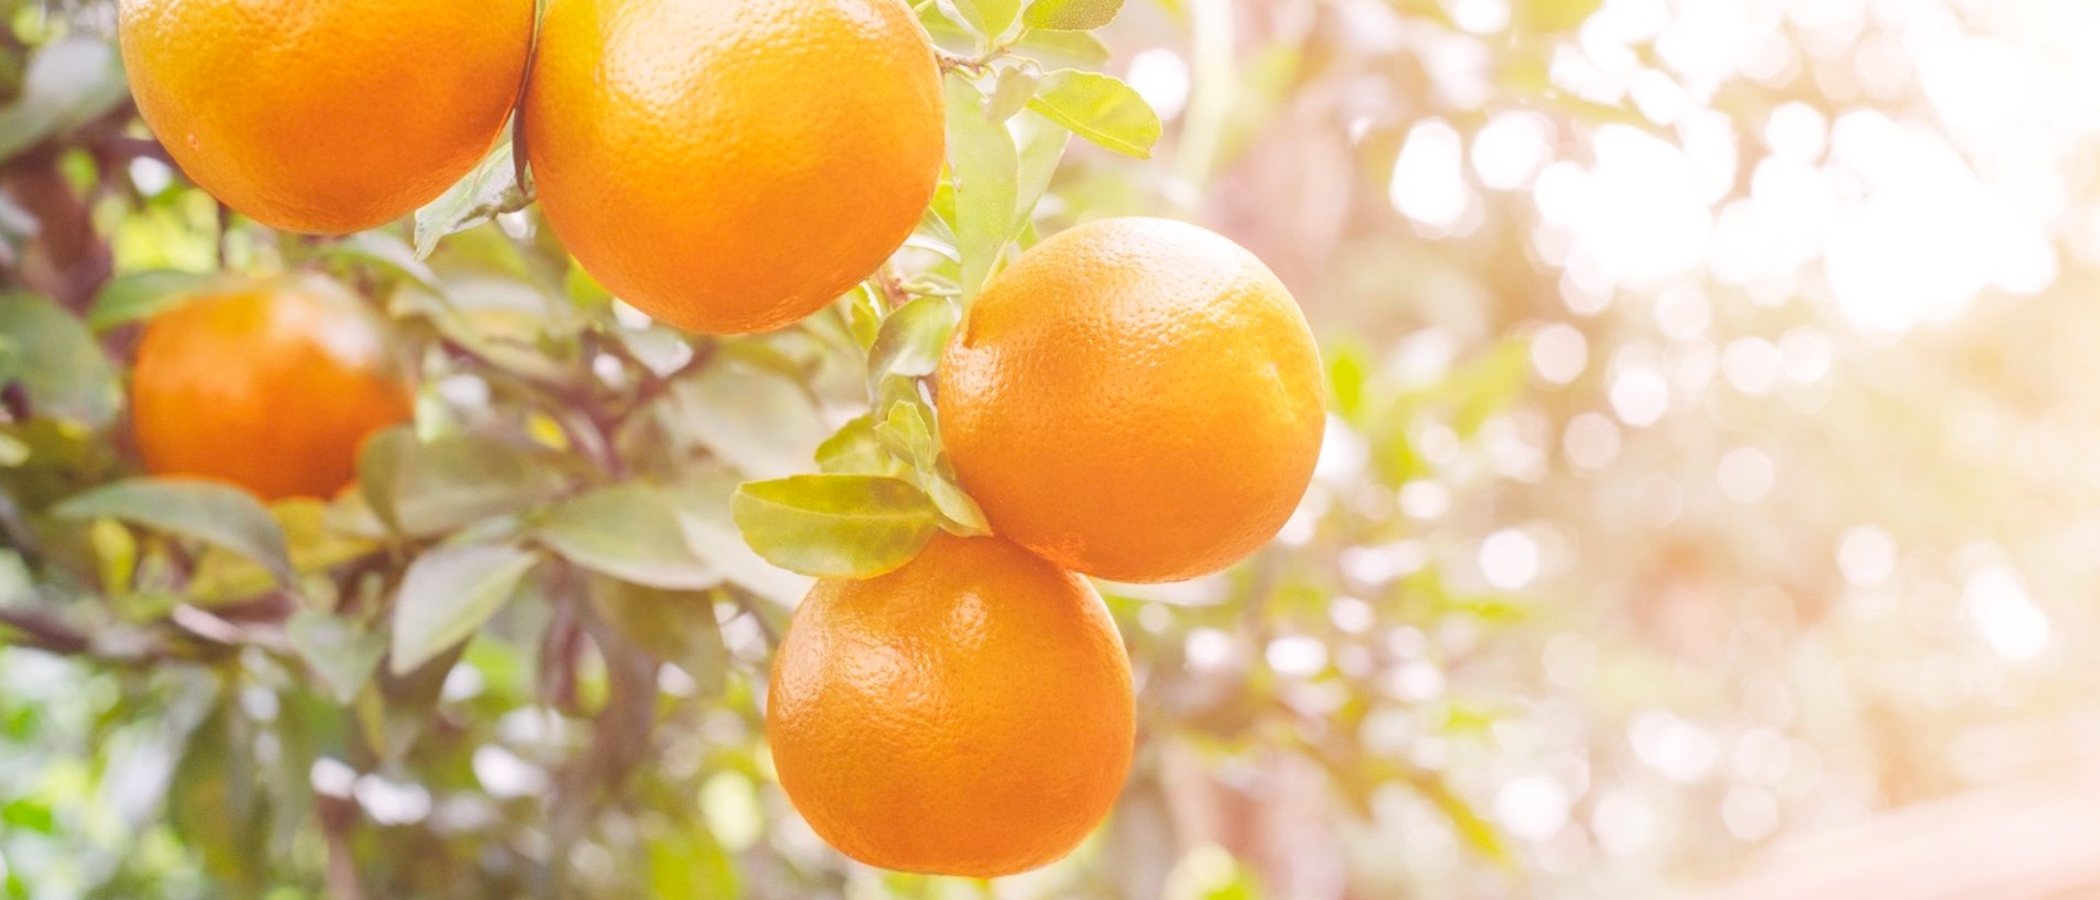 6 beneficios de la naranja para tu piel